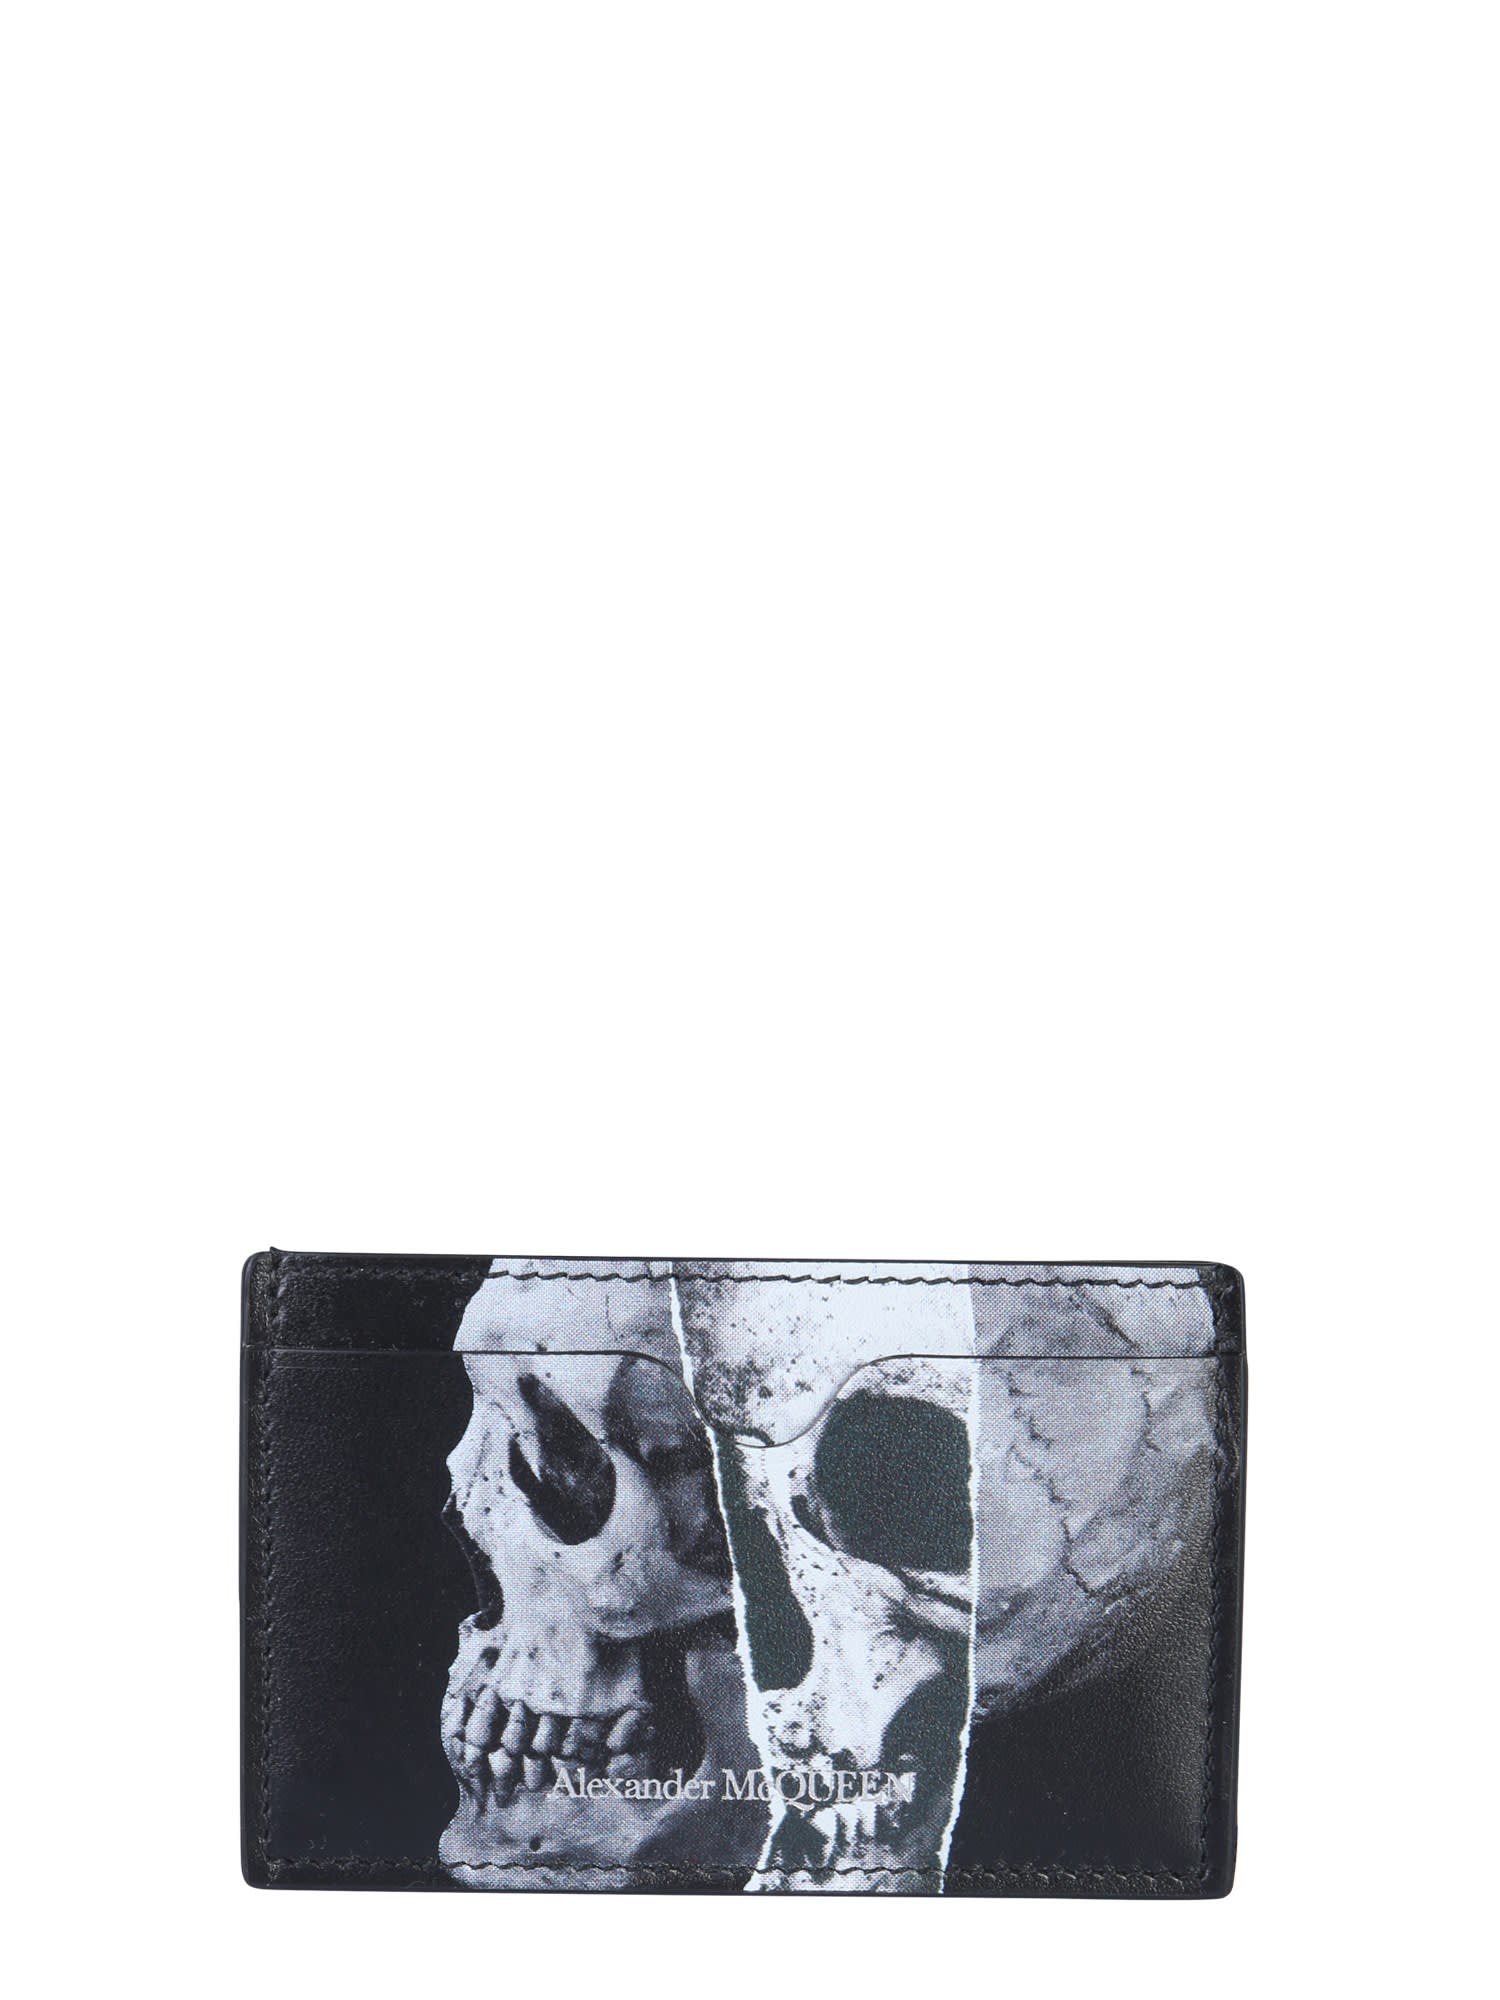 alexander mcqueen skull card holder